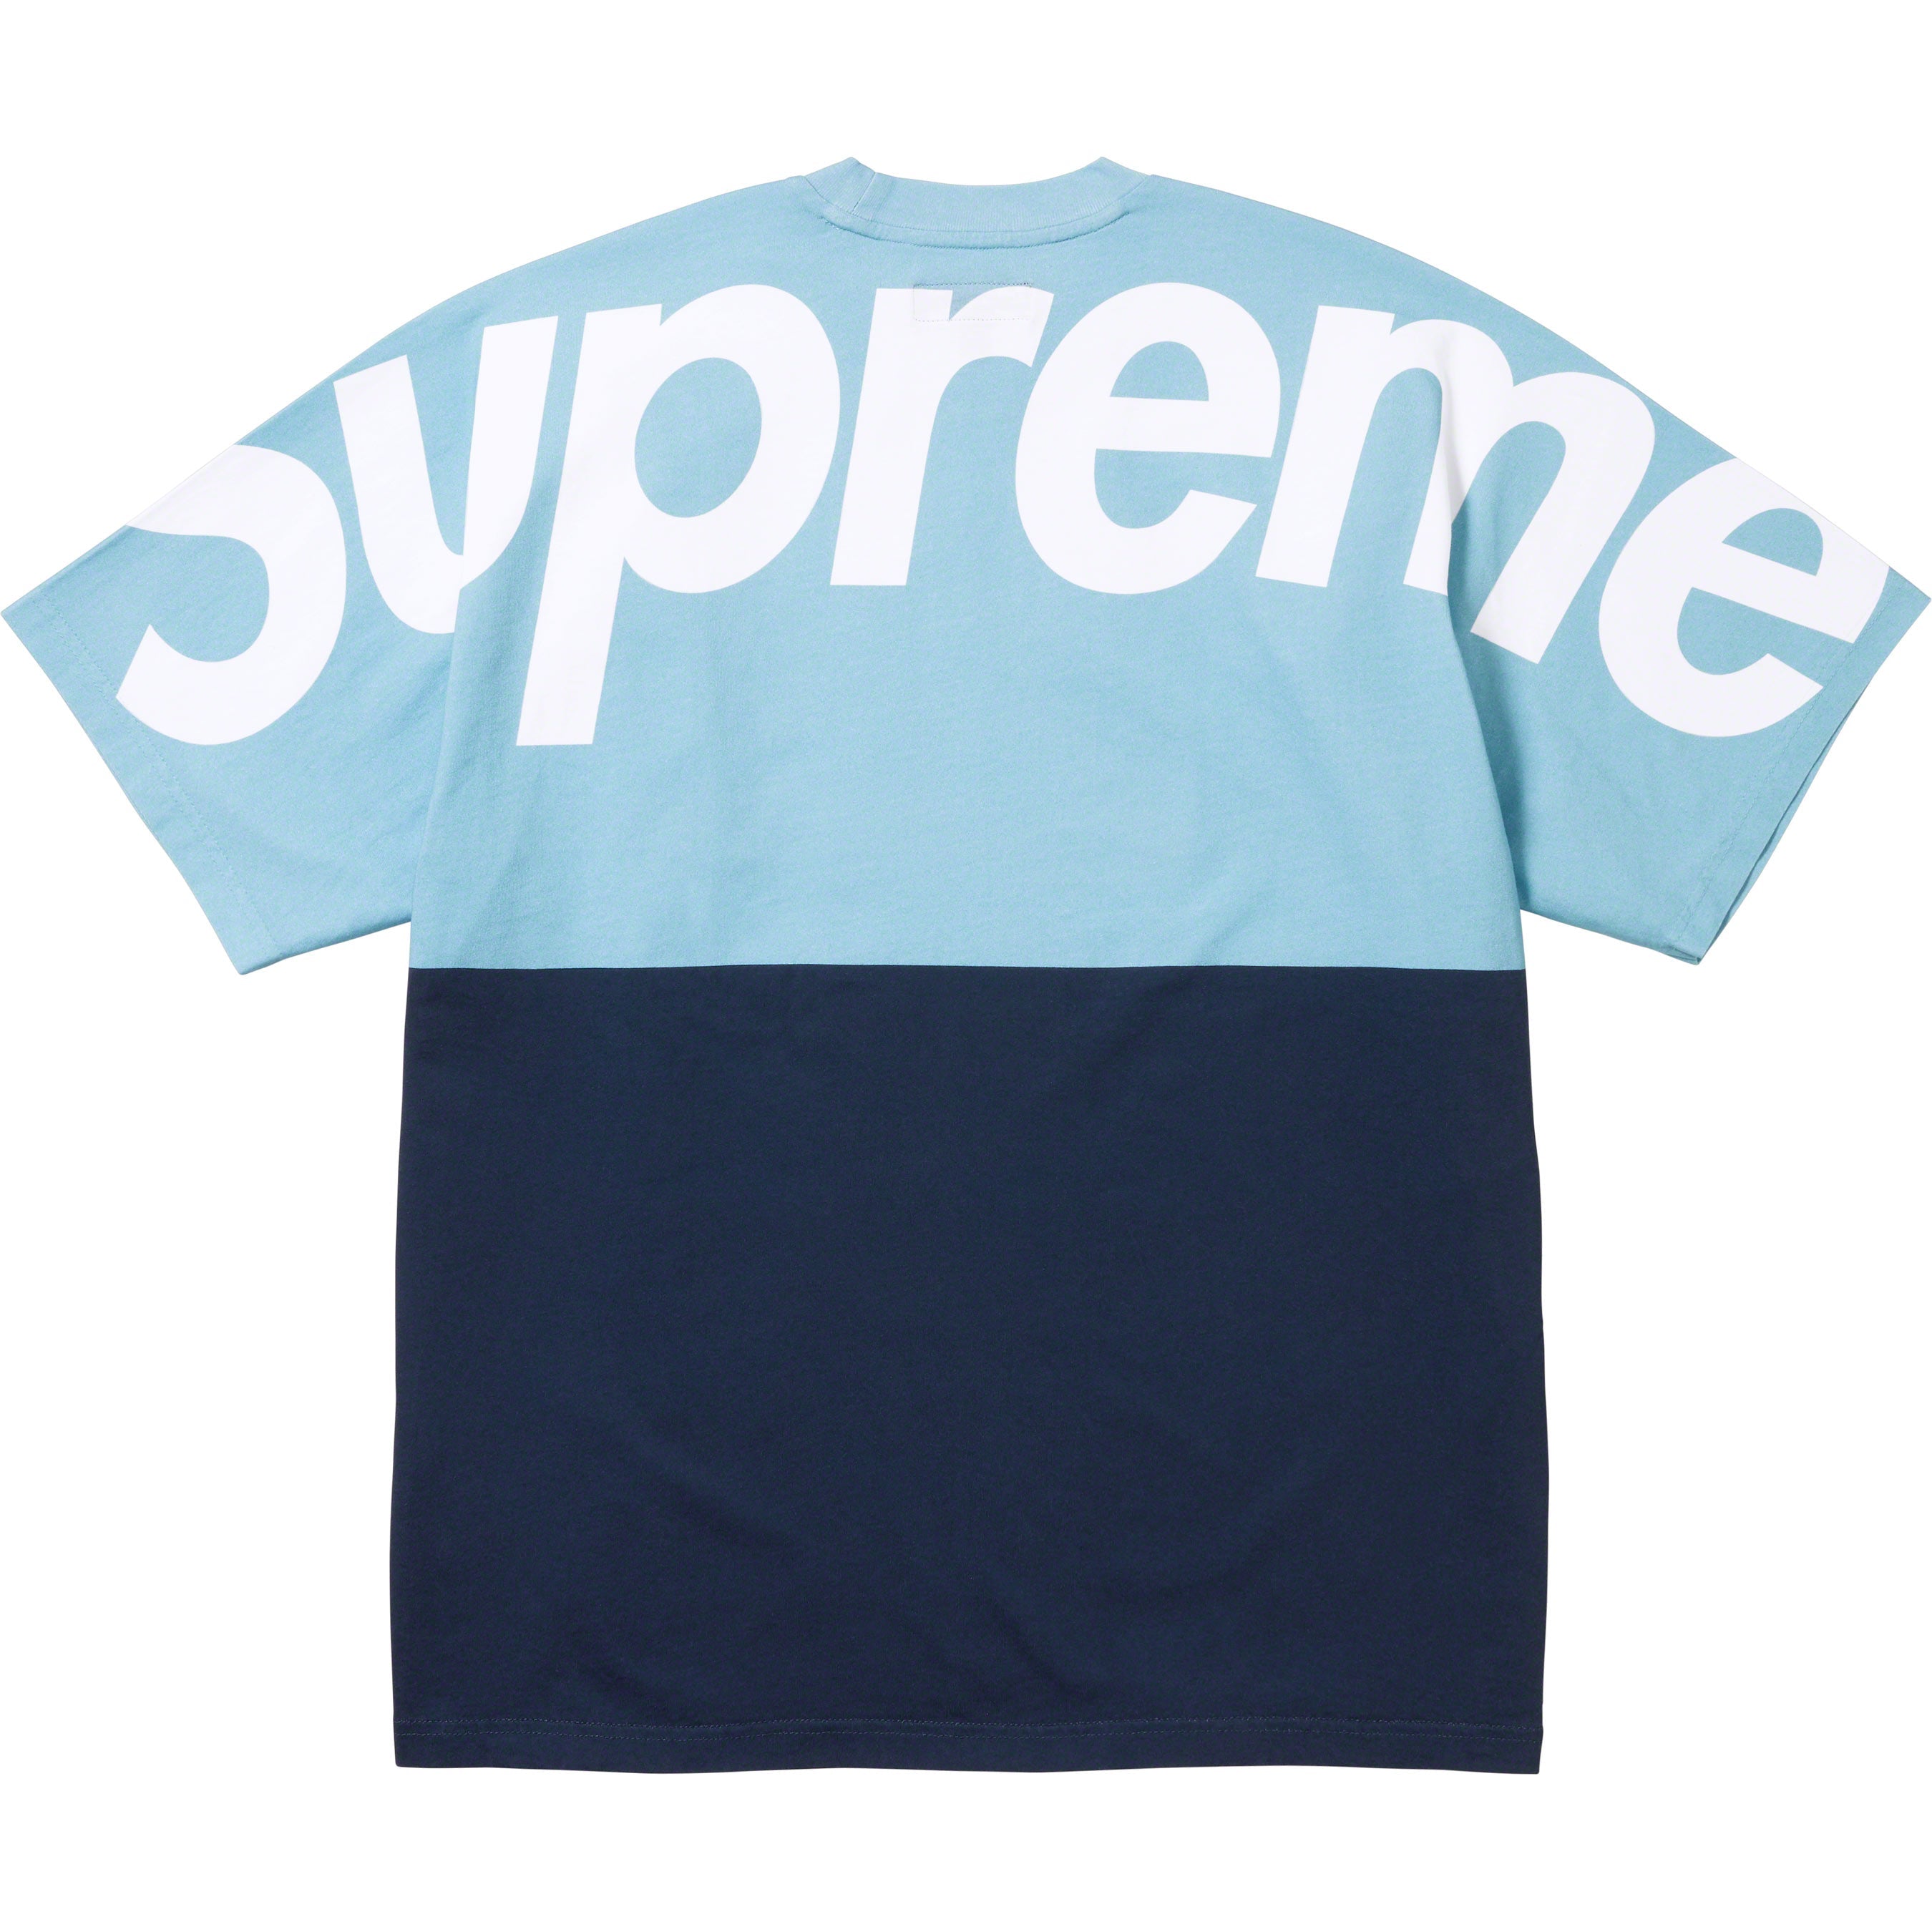 Supreme split s/s top blue-